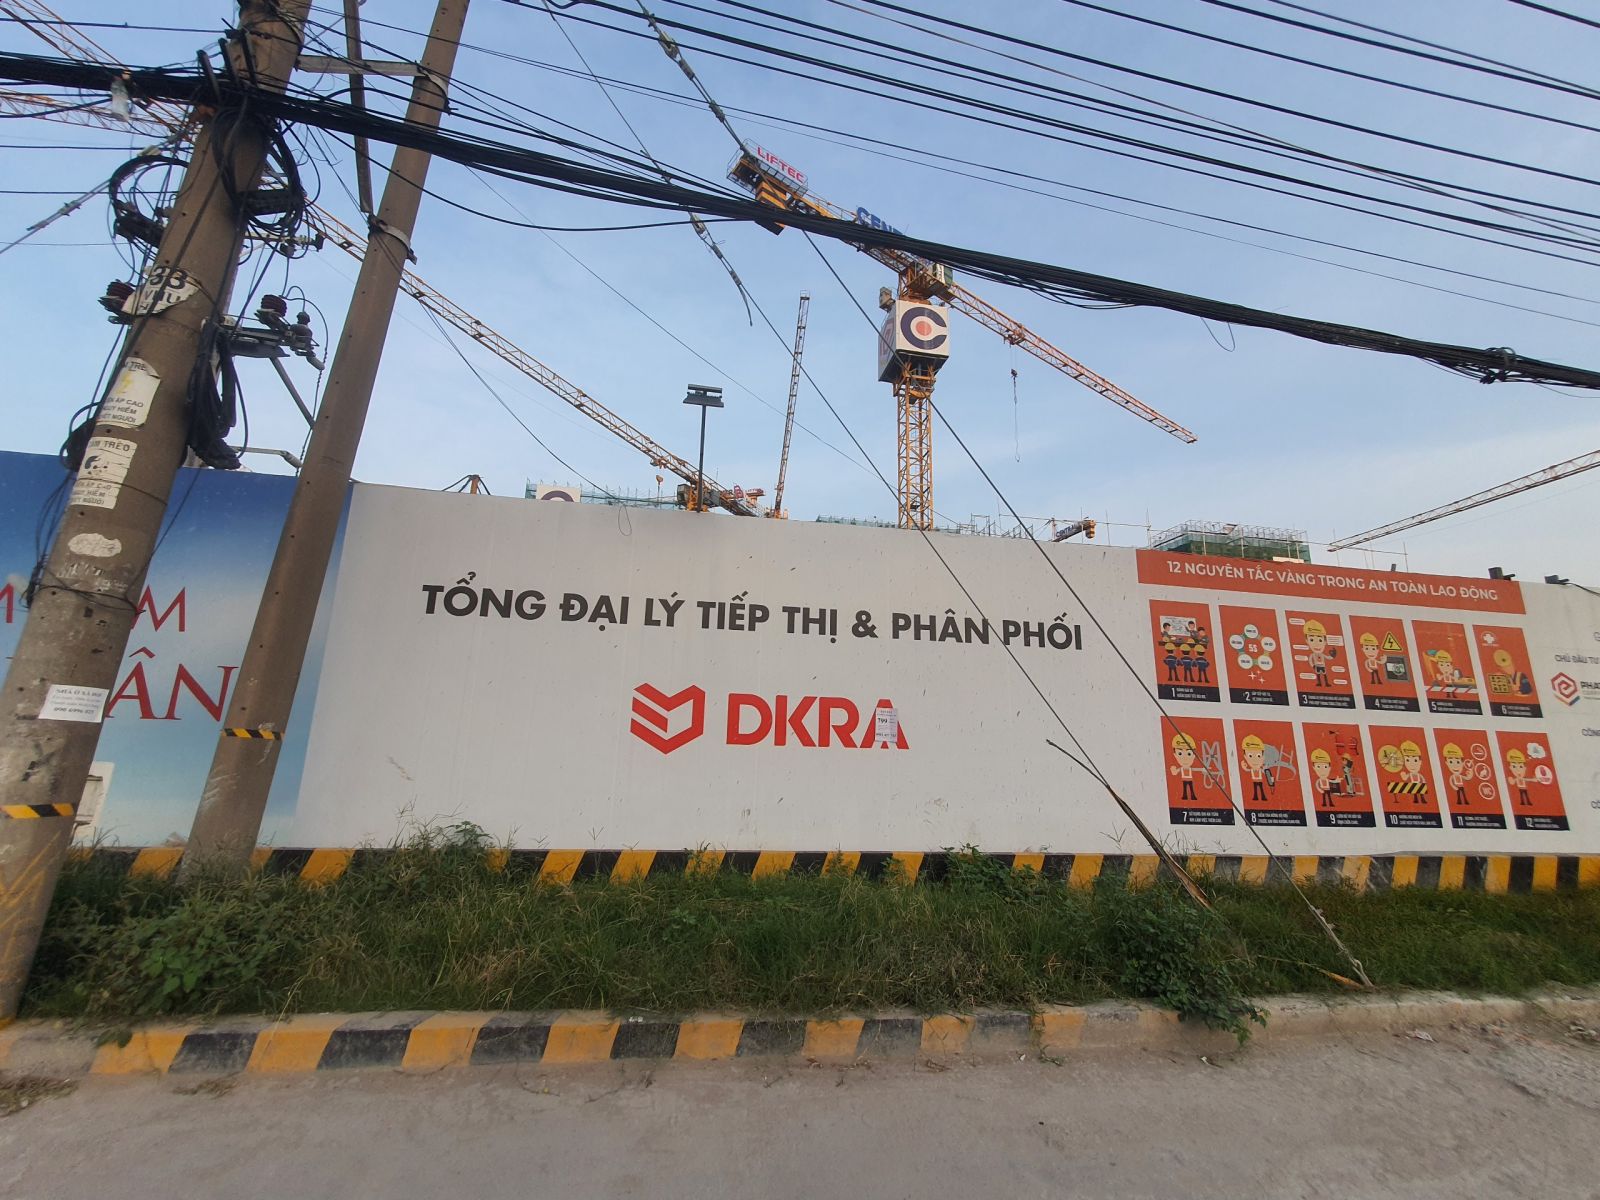 Công ty DKRA là sàn phân phối chính của dự án khi mới ra mắt